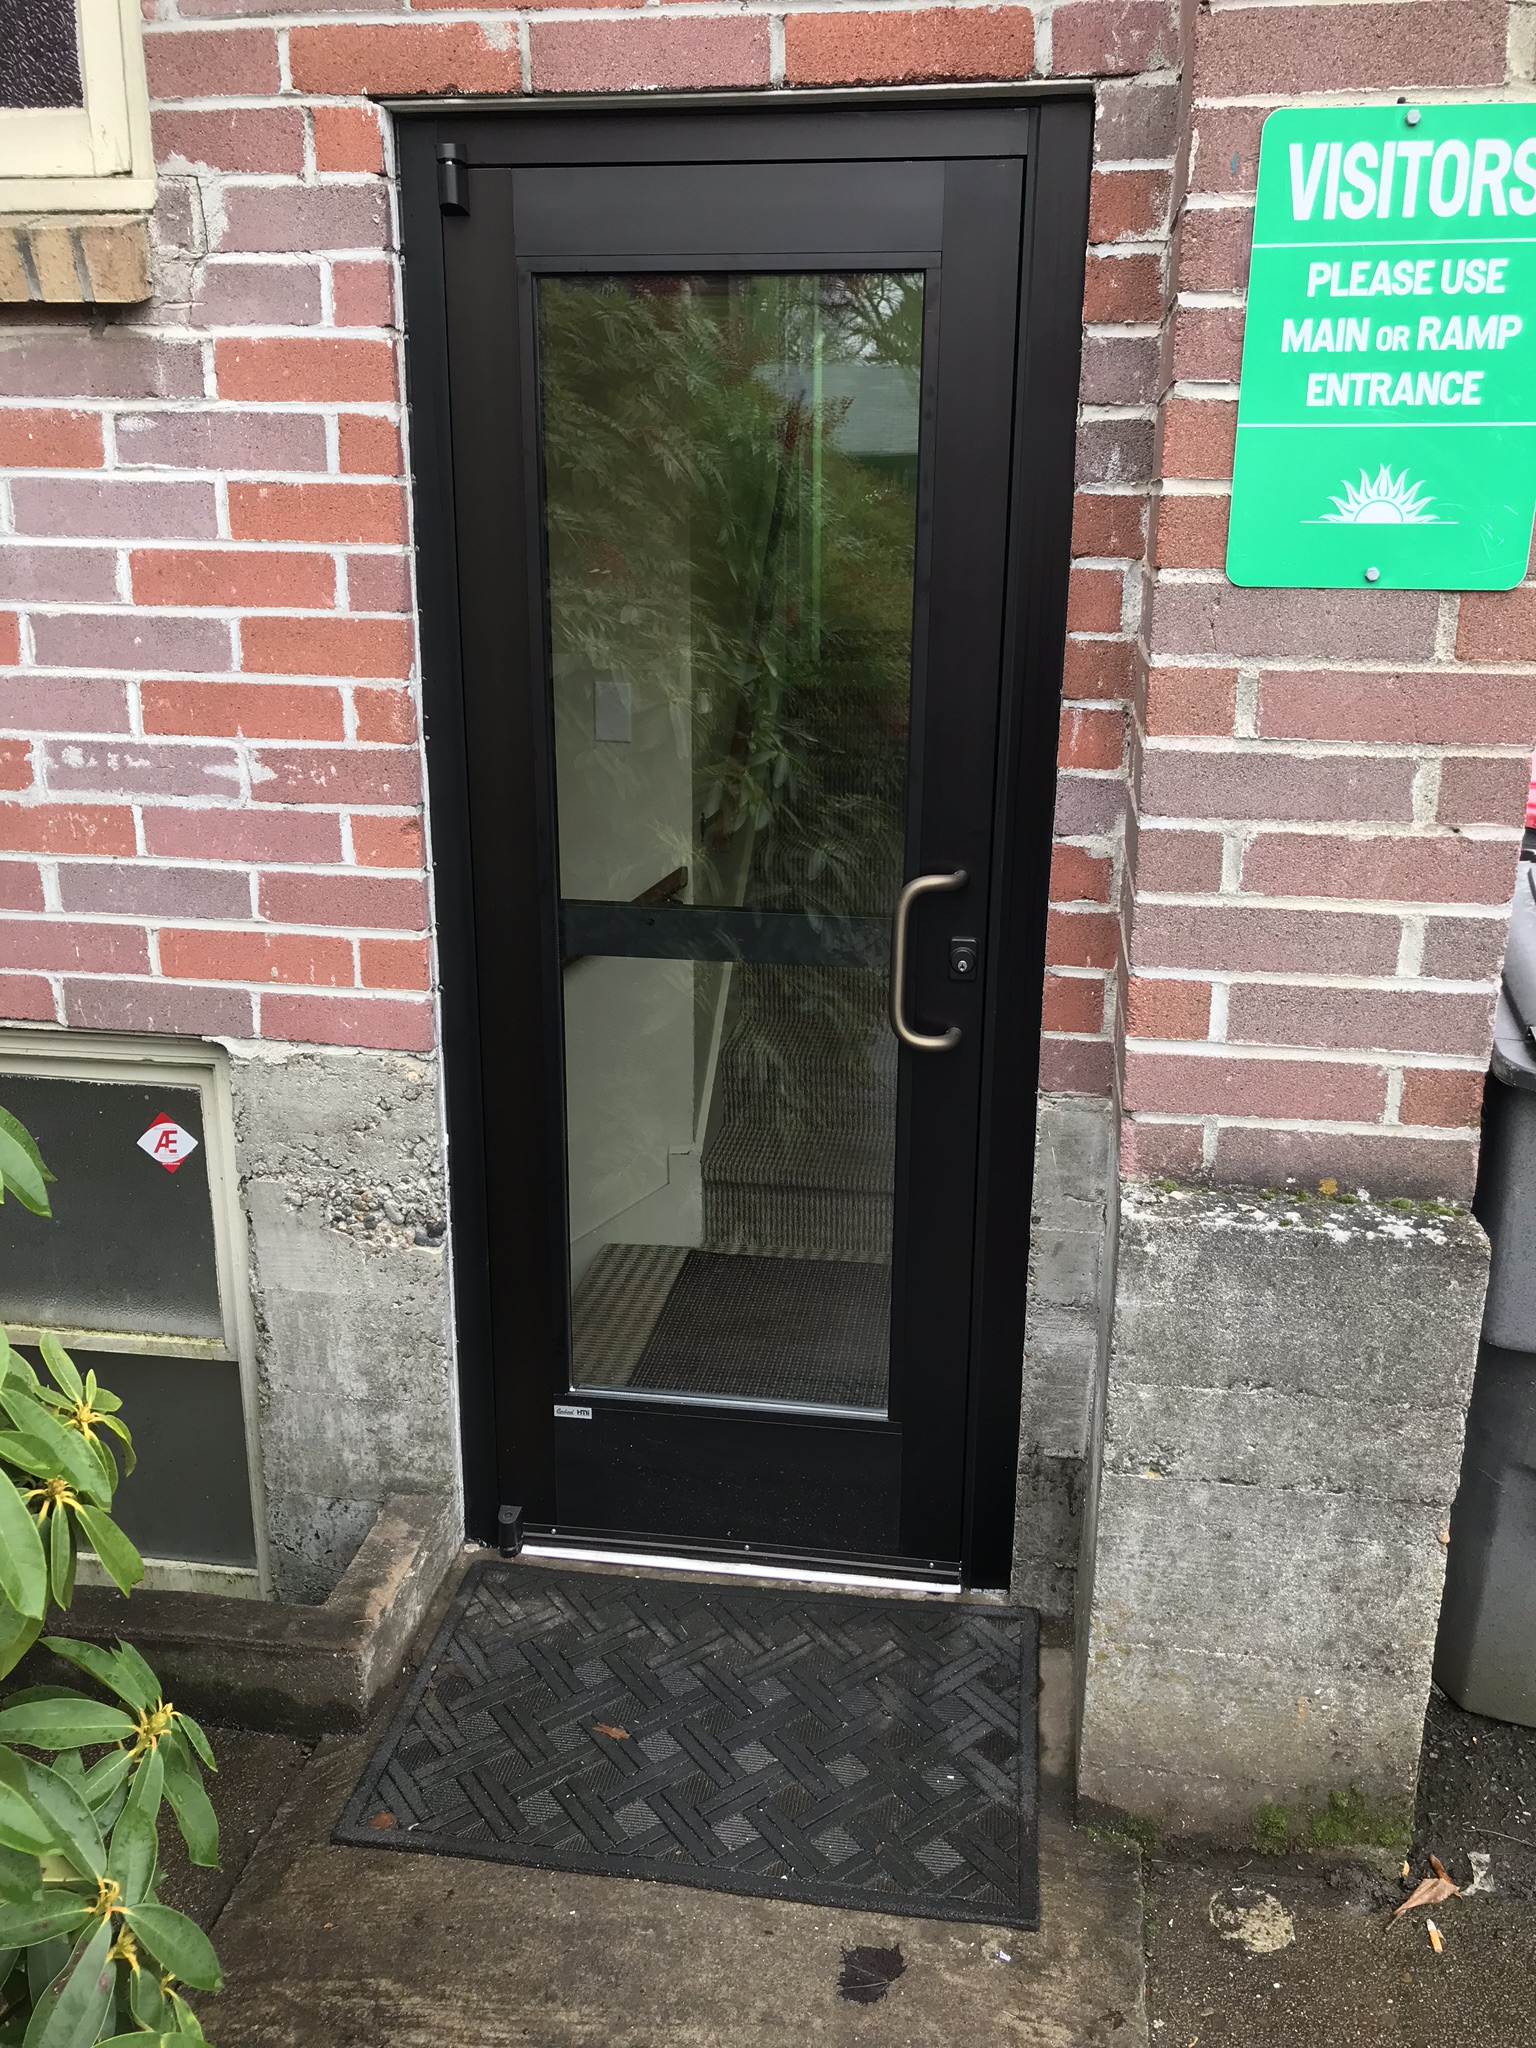 commercial glass door repair